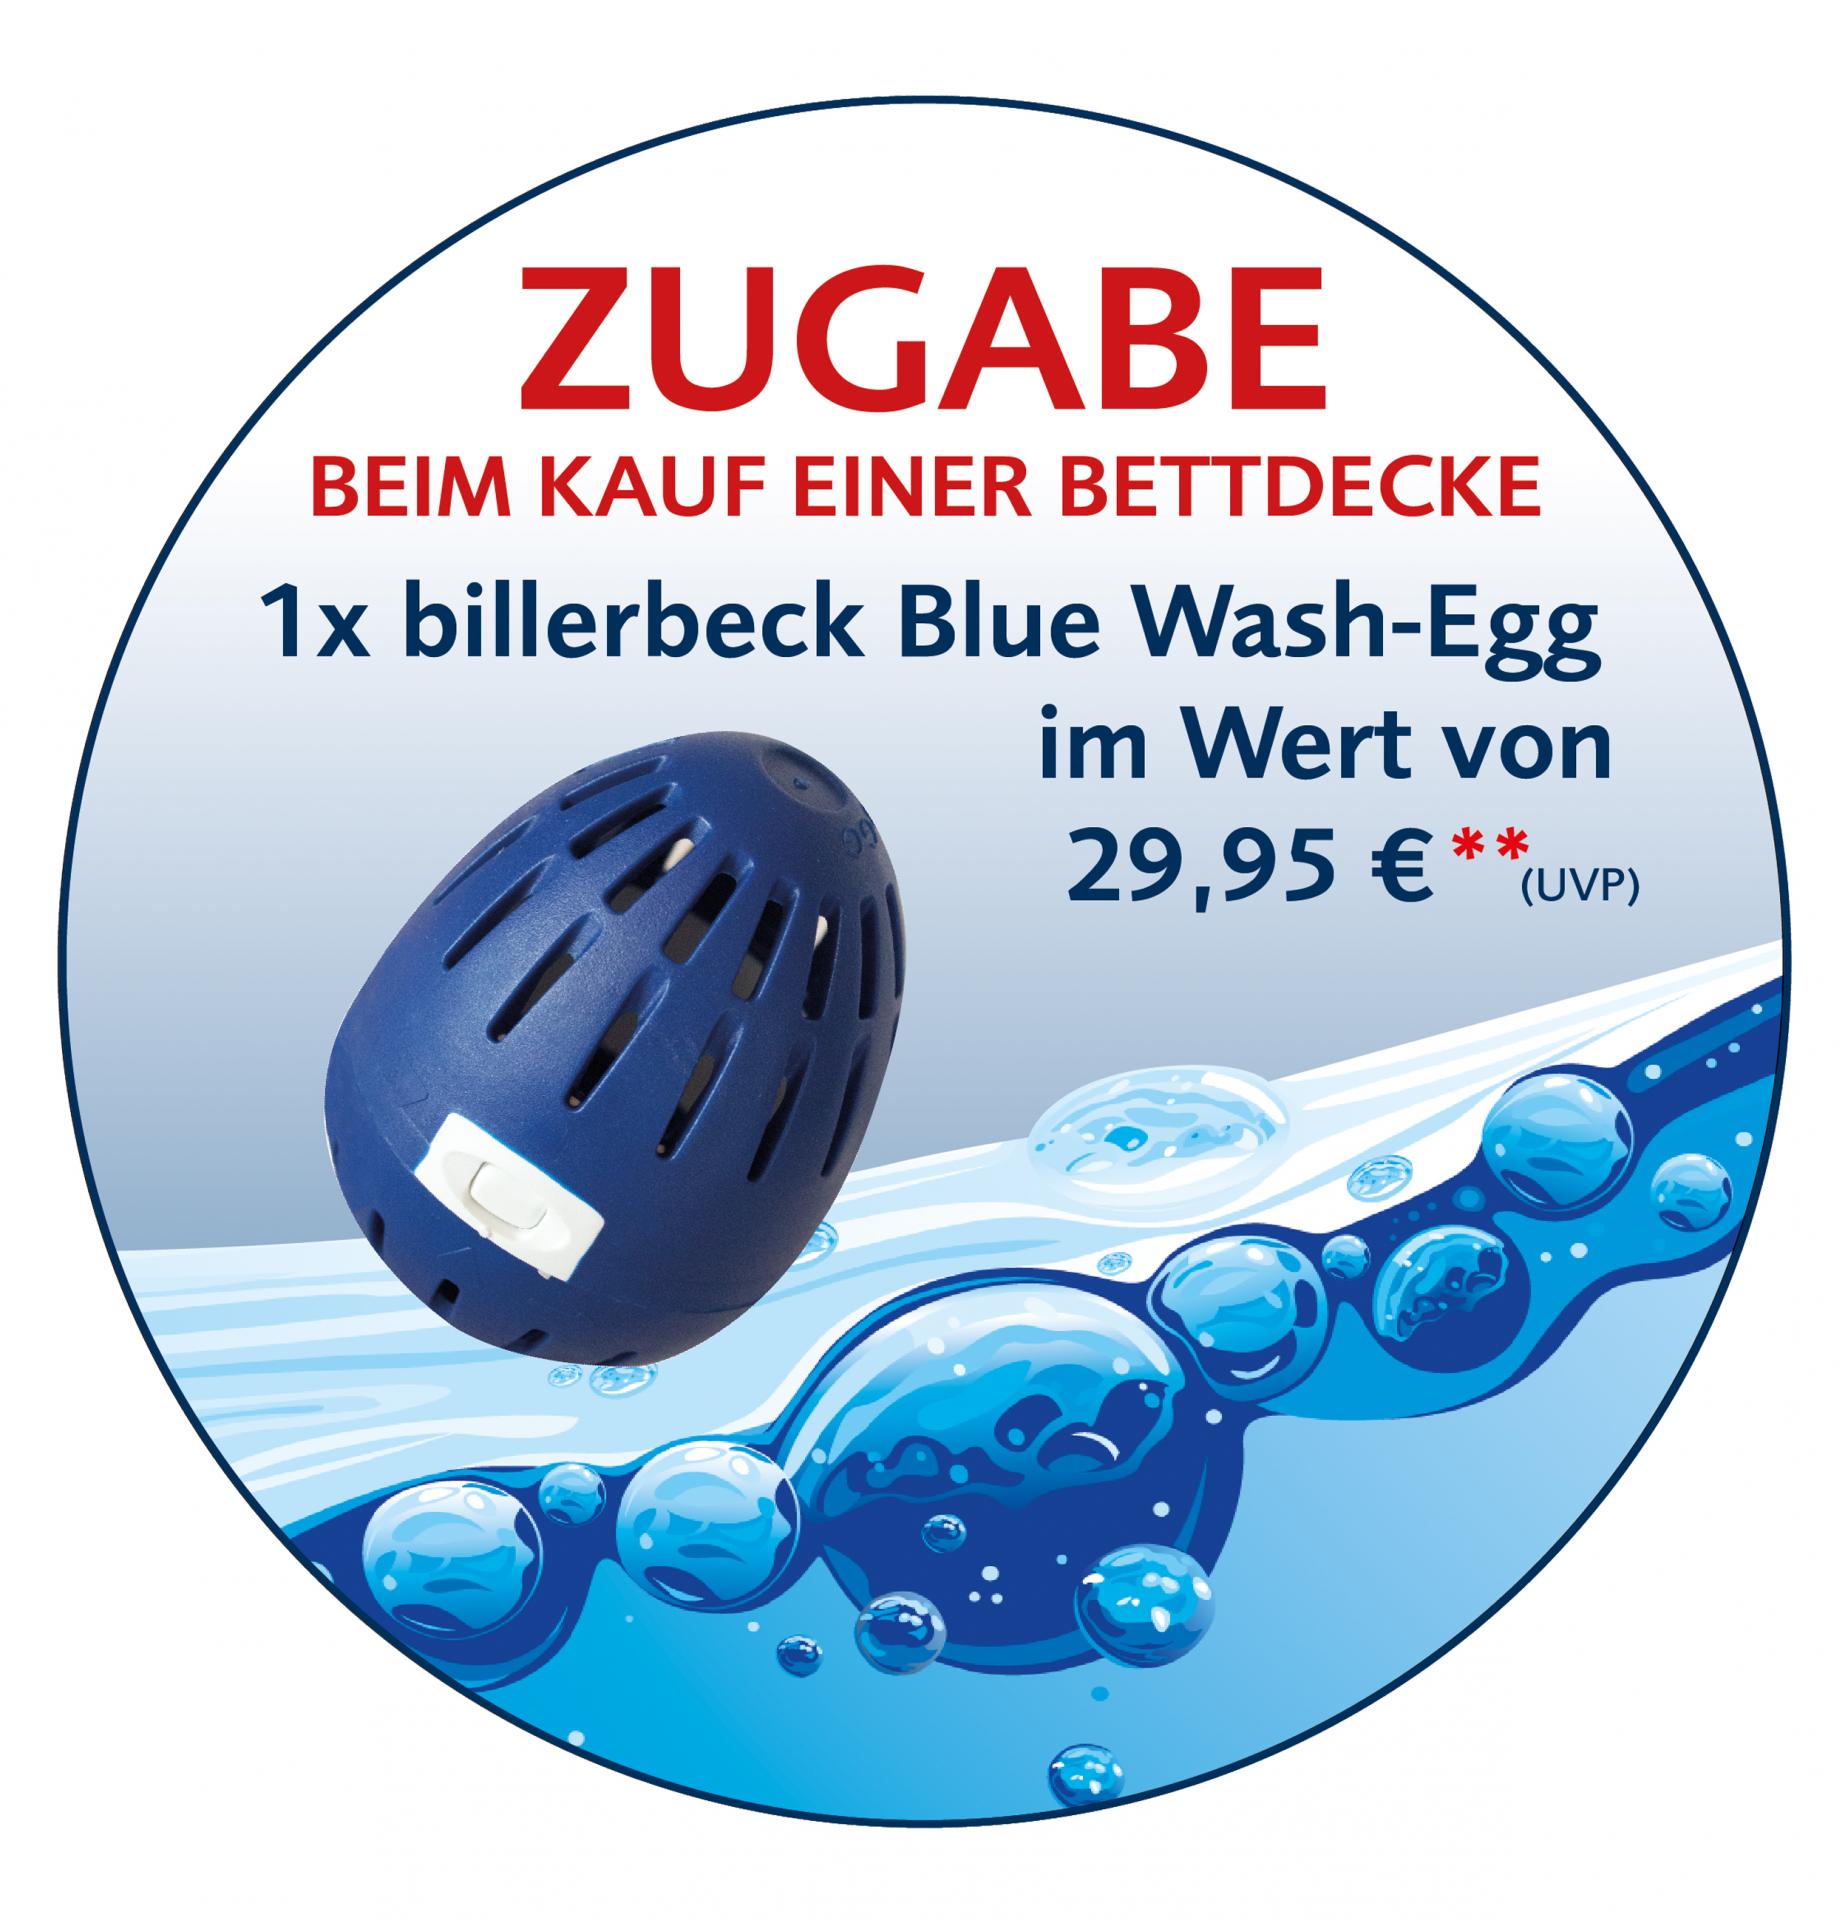 billerbeck Blue Wash Egg Bio Waschmittel Zugabe beim Kauf
